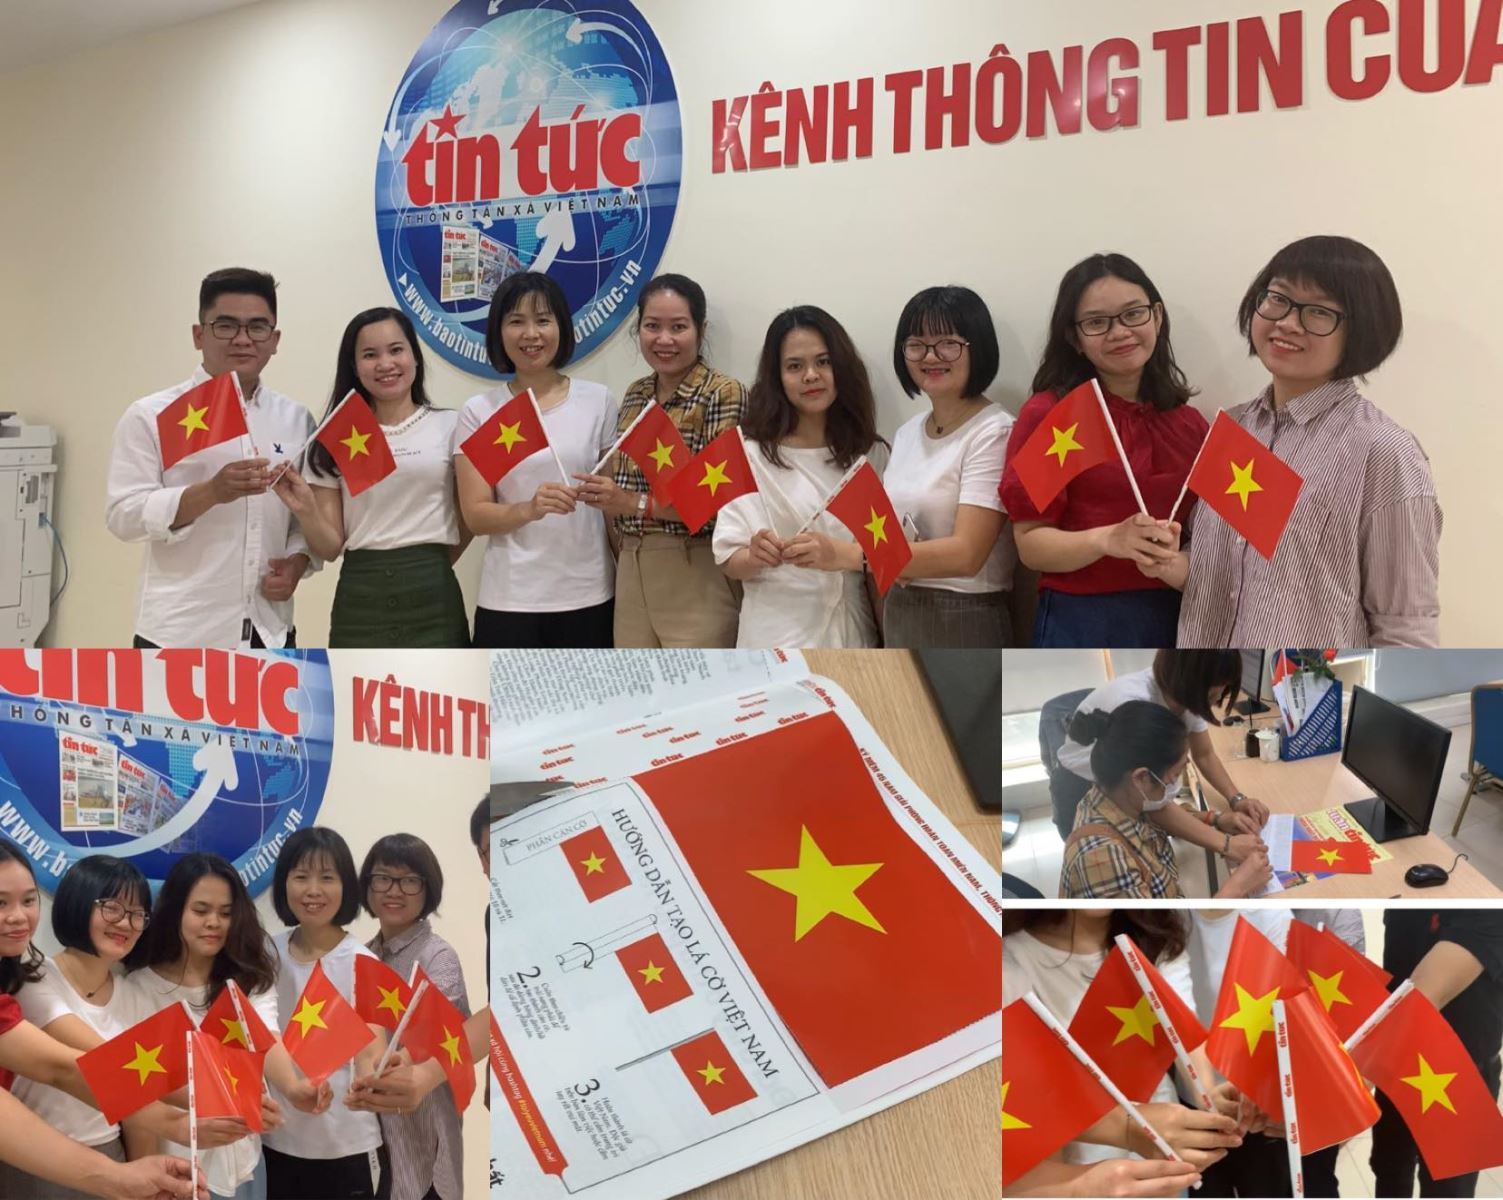 Hình ảnh lá cờ Việt Nam đầy hào hùng và ý nghĩa sẽ khiến bạn tự hào về đất nước. Hãy xem ngay để cảm nhận được tinh thần đoàn kết và yêu nước trong mỗi sợi sắc đỏ và vàng trên lá cờ quốc gia.